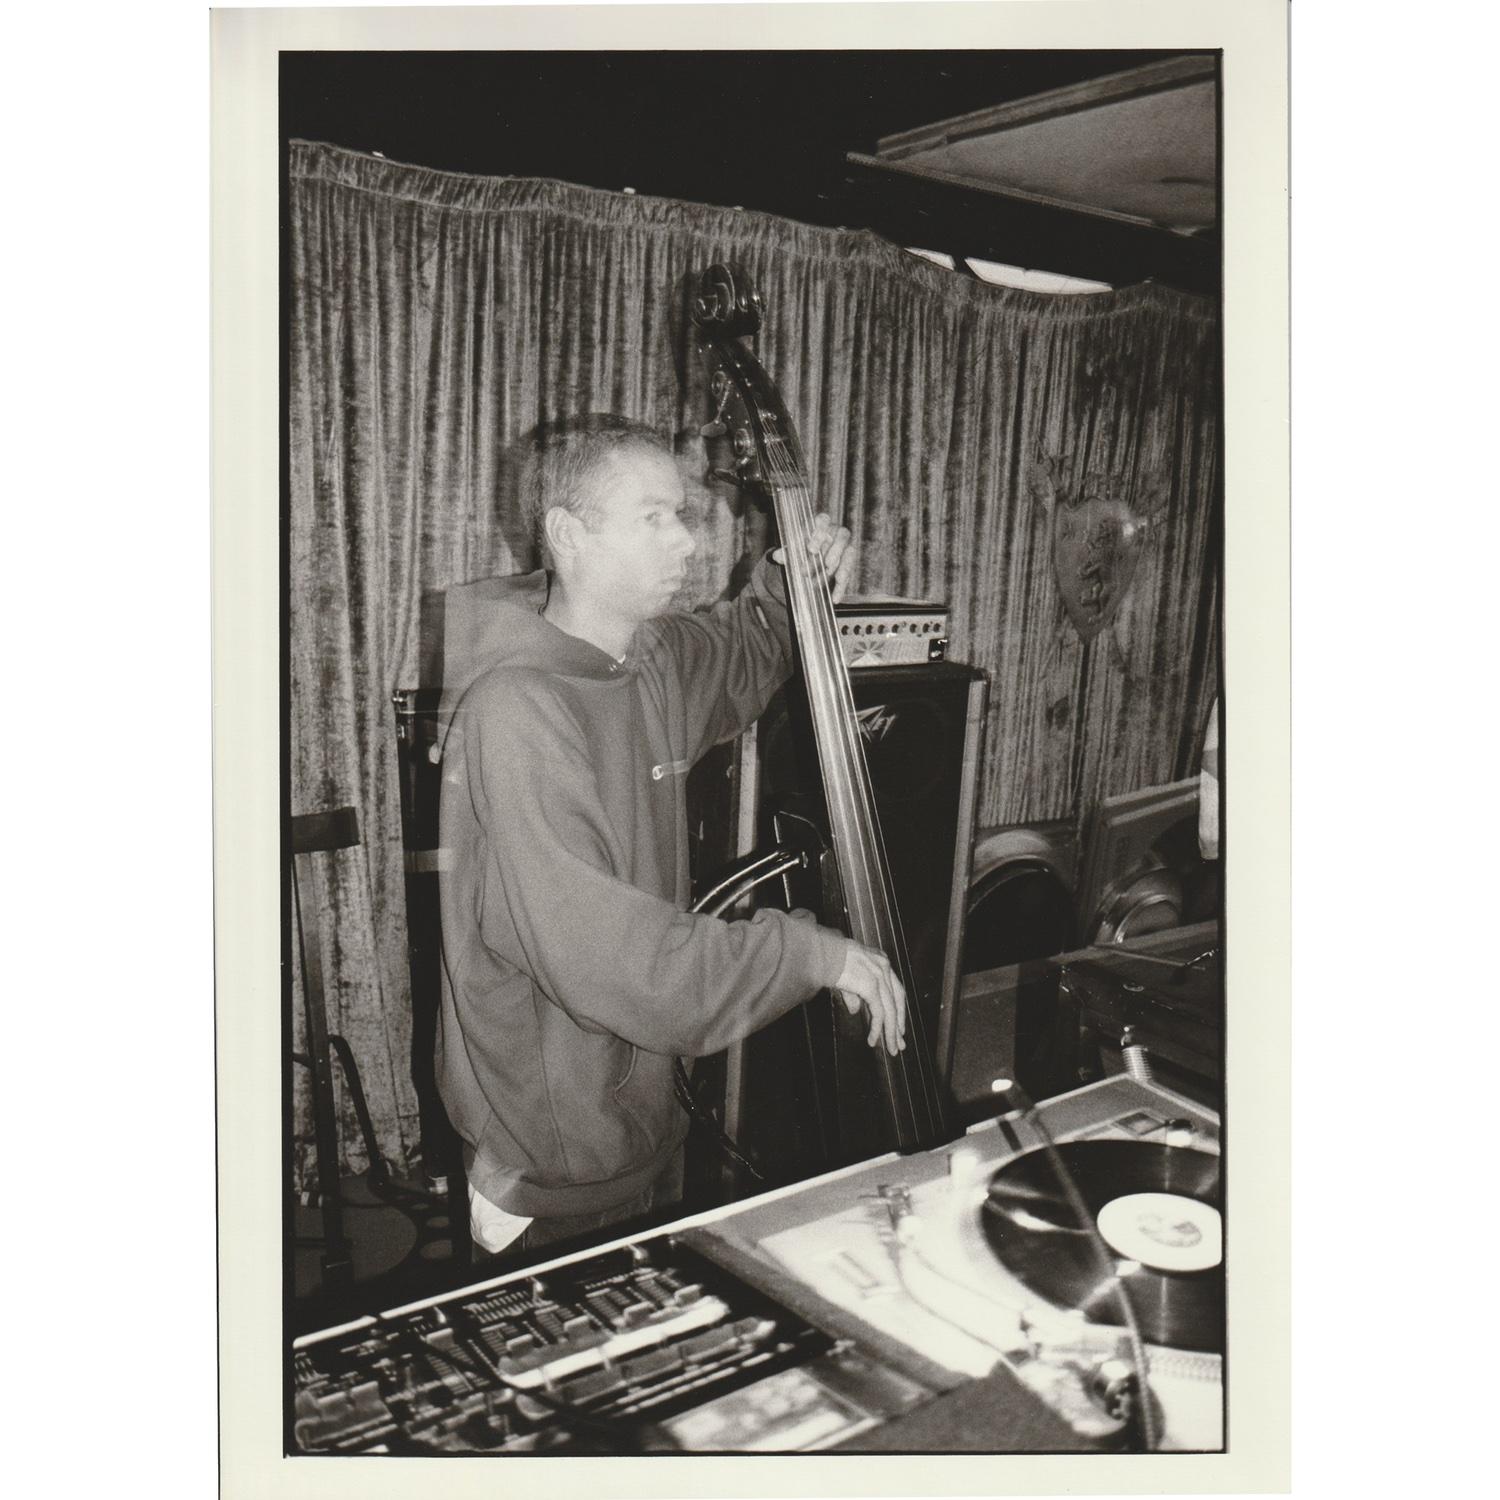 Originaler handgedruckter Vintage-Abzug des Fotografen Jake Chessum von Beastie Boys Adam Yauch, bekannt als MCA, beim Kontrabassspielen im Studio im Jahr 1994. 

Damals von Jake gedruckt, auf der Rückseite mit Bleistift signiert, datiert und